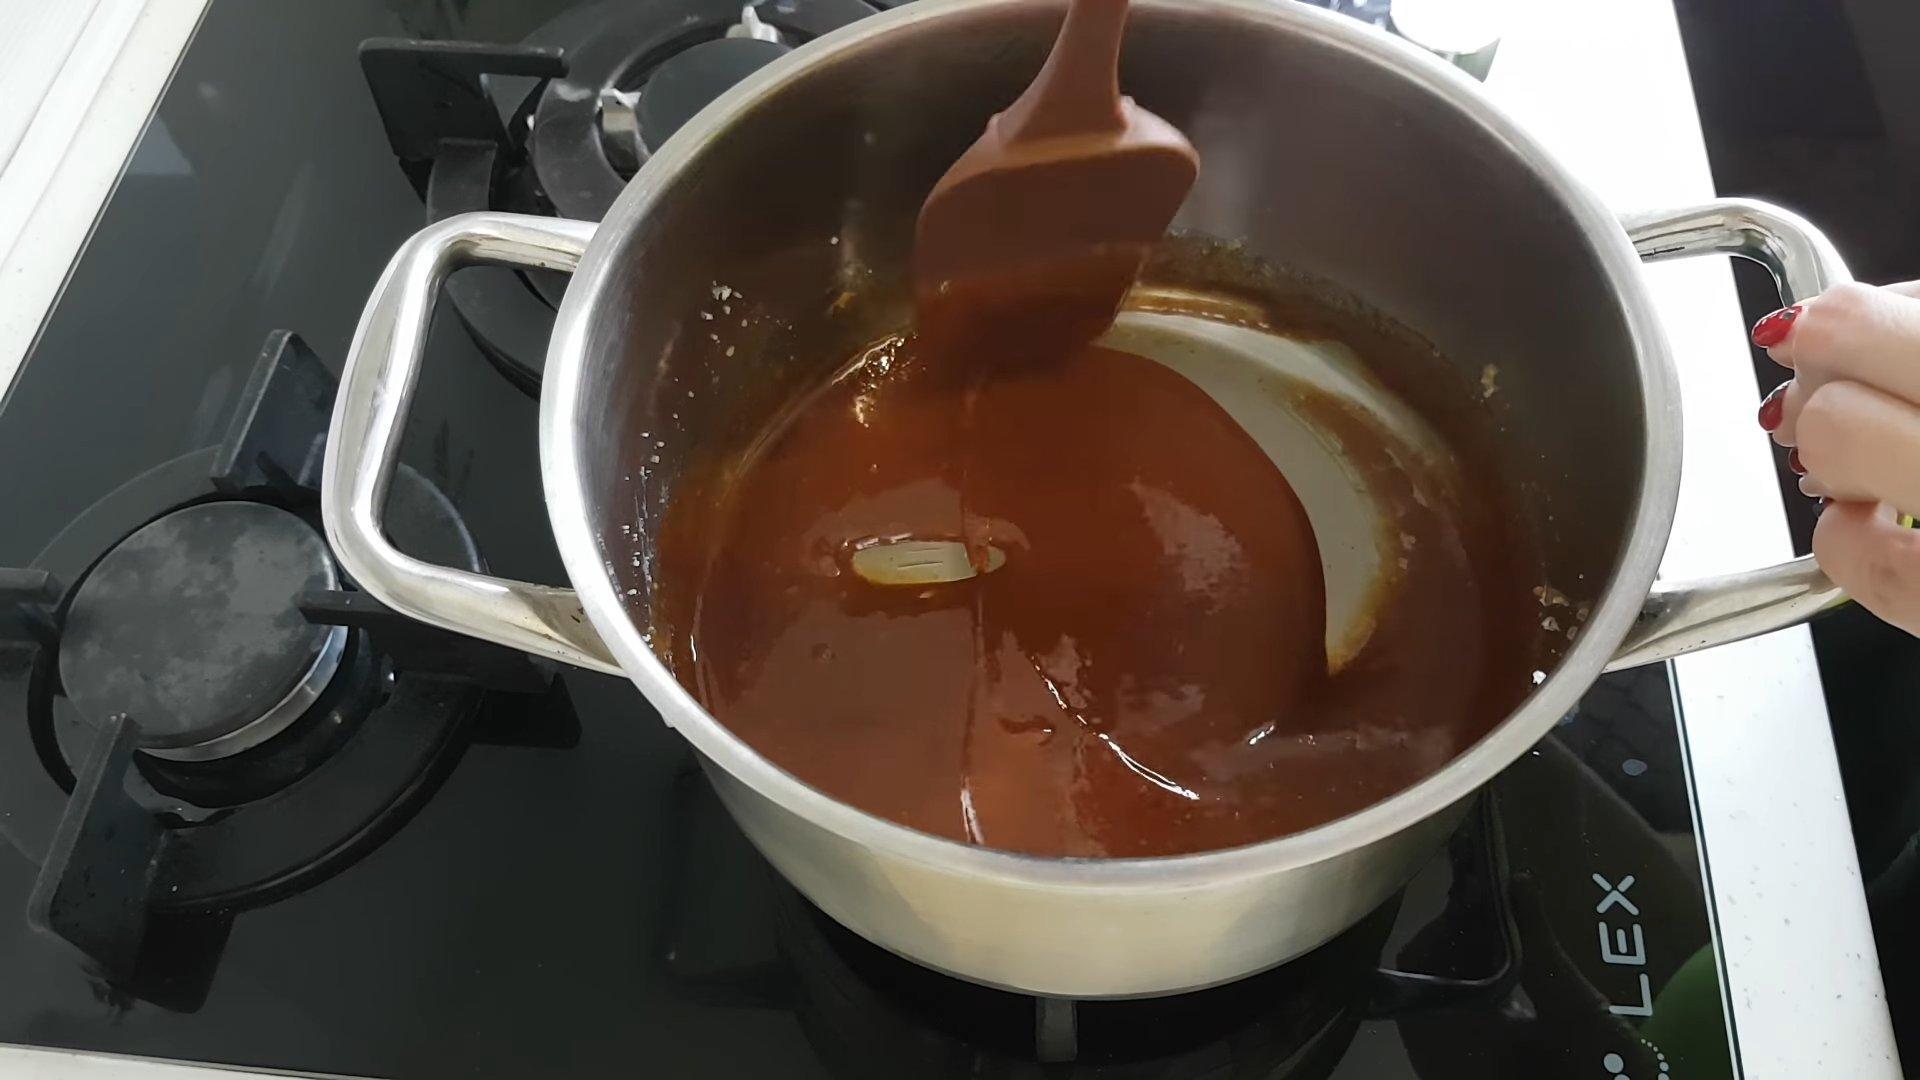 Как приготовить имбирные пряники без мёда - шаг 1-2